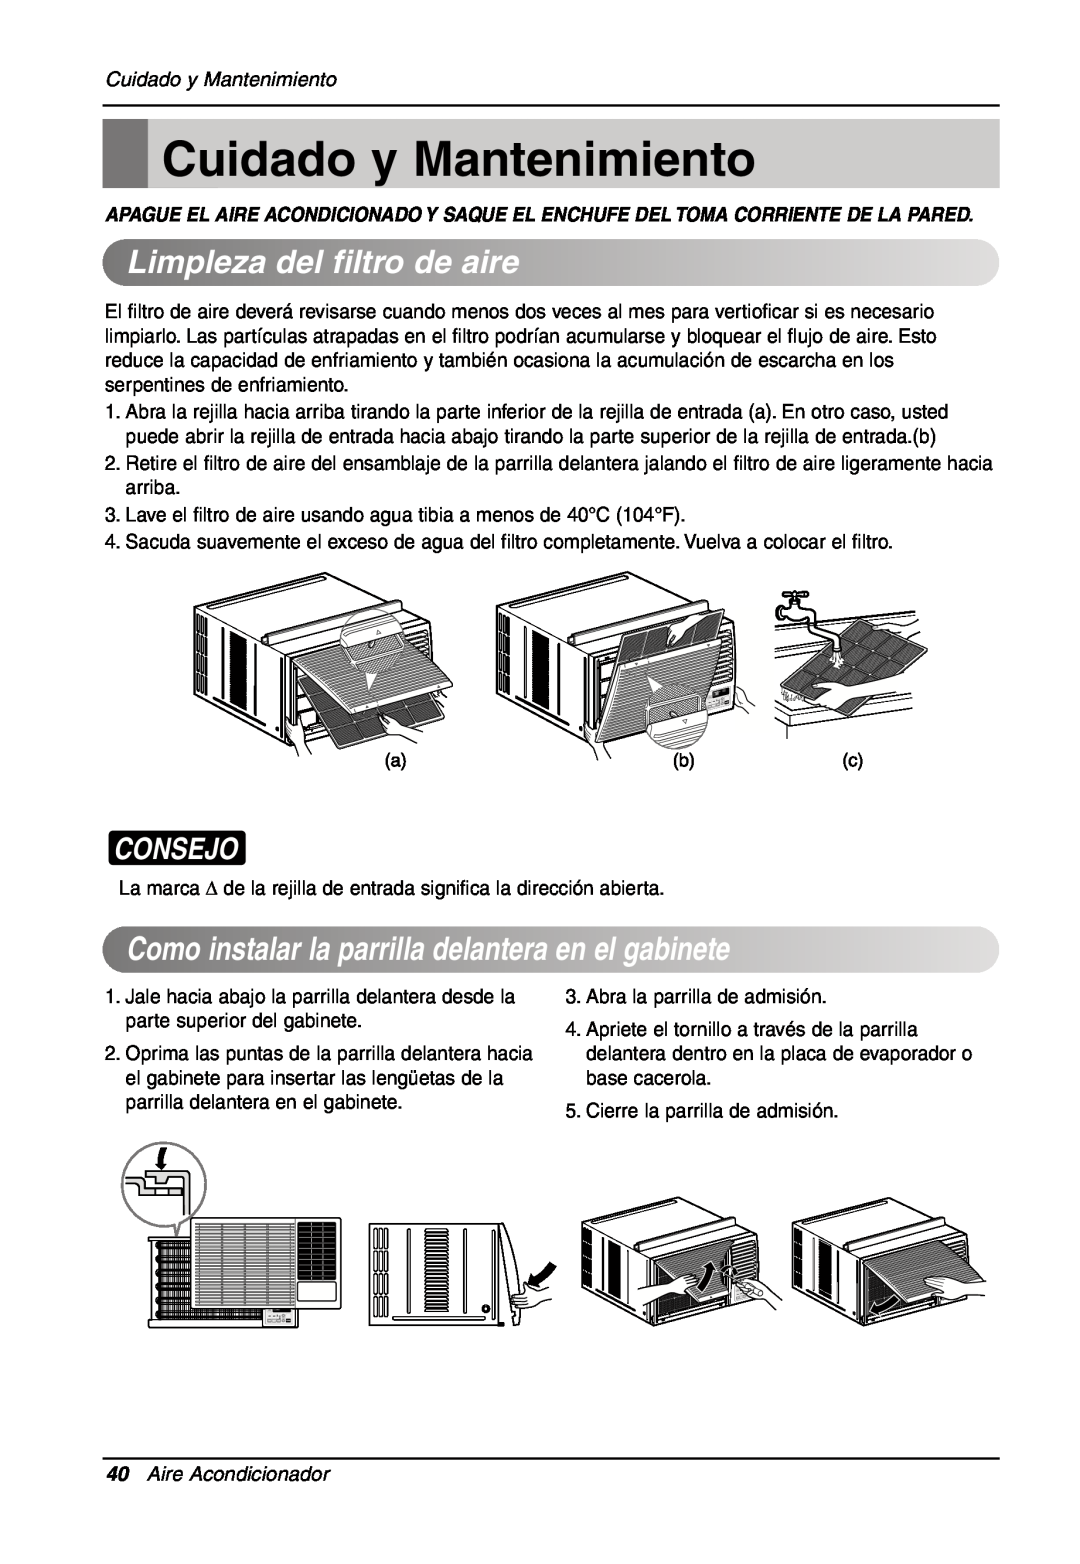 LG Electronics LW701 HR owner manual Cuidado y Mantenimiento, Limplezadel filtrodeaire, Consejo, Aire Acondicionador 